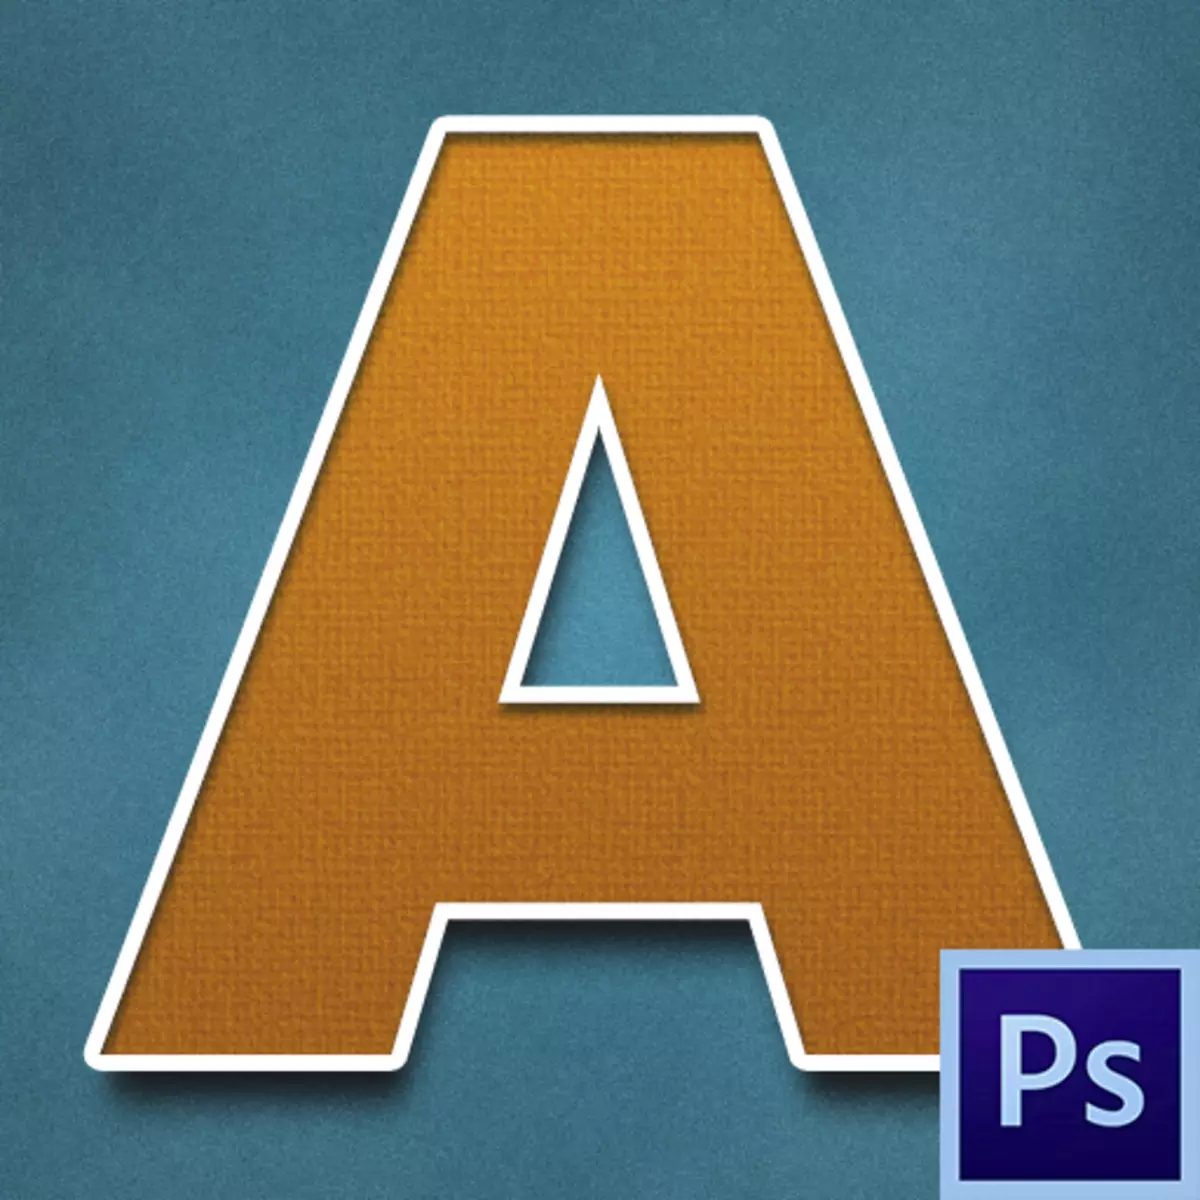 Kā izveidot skaistu fontu Photoshop